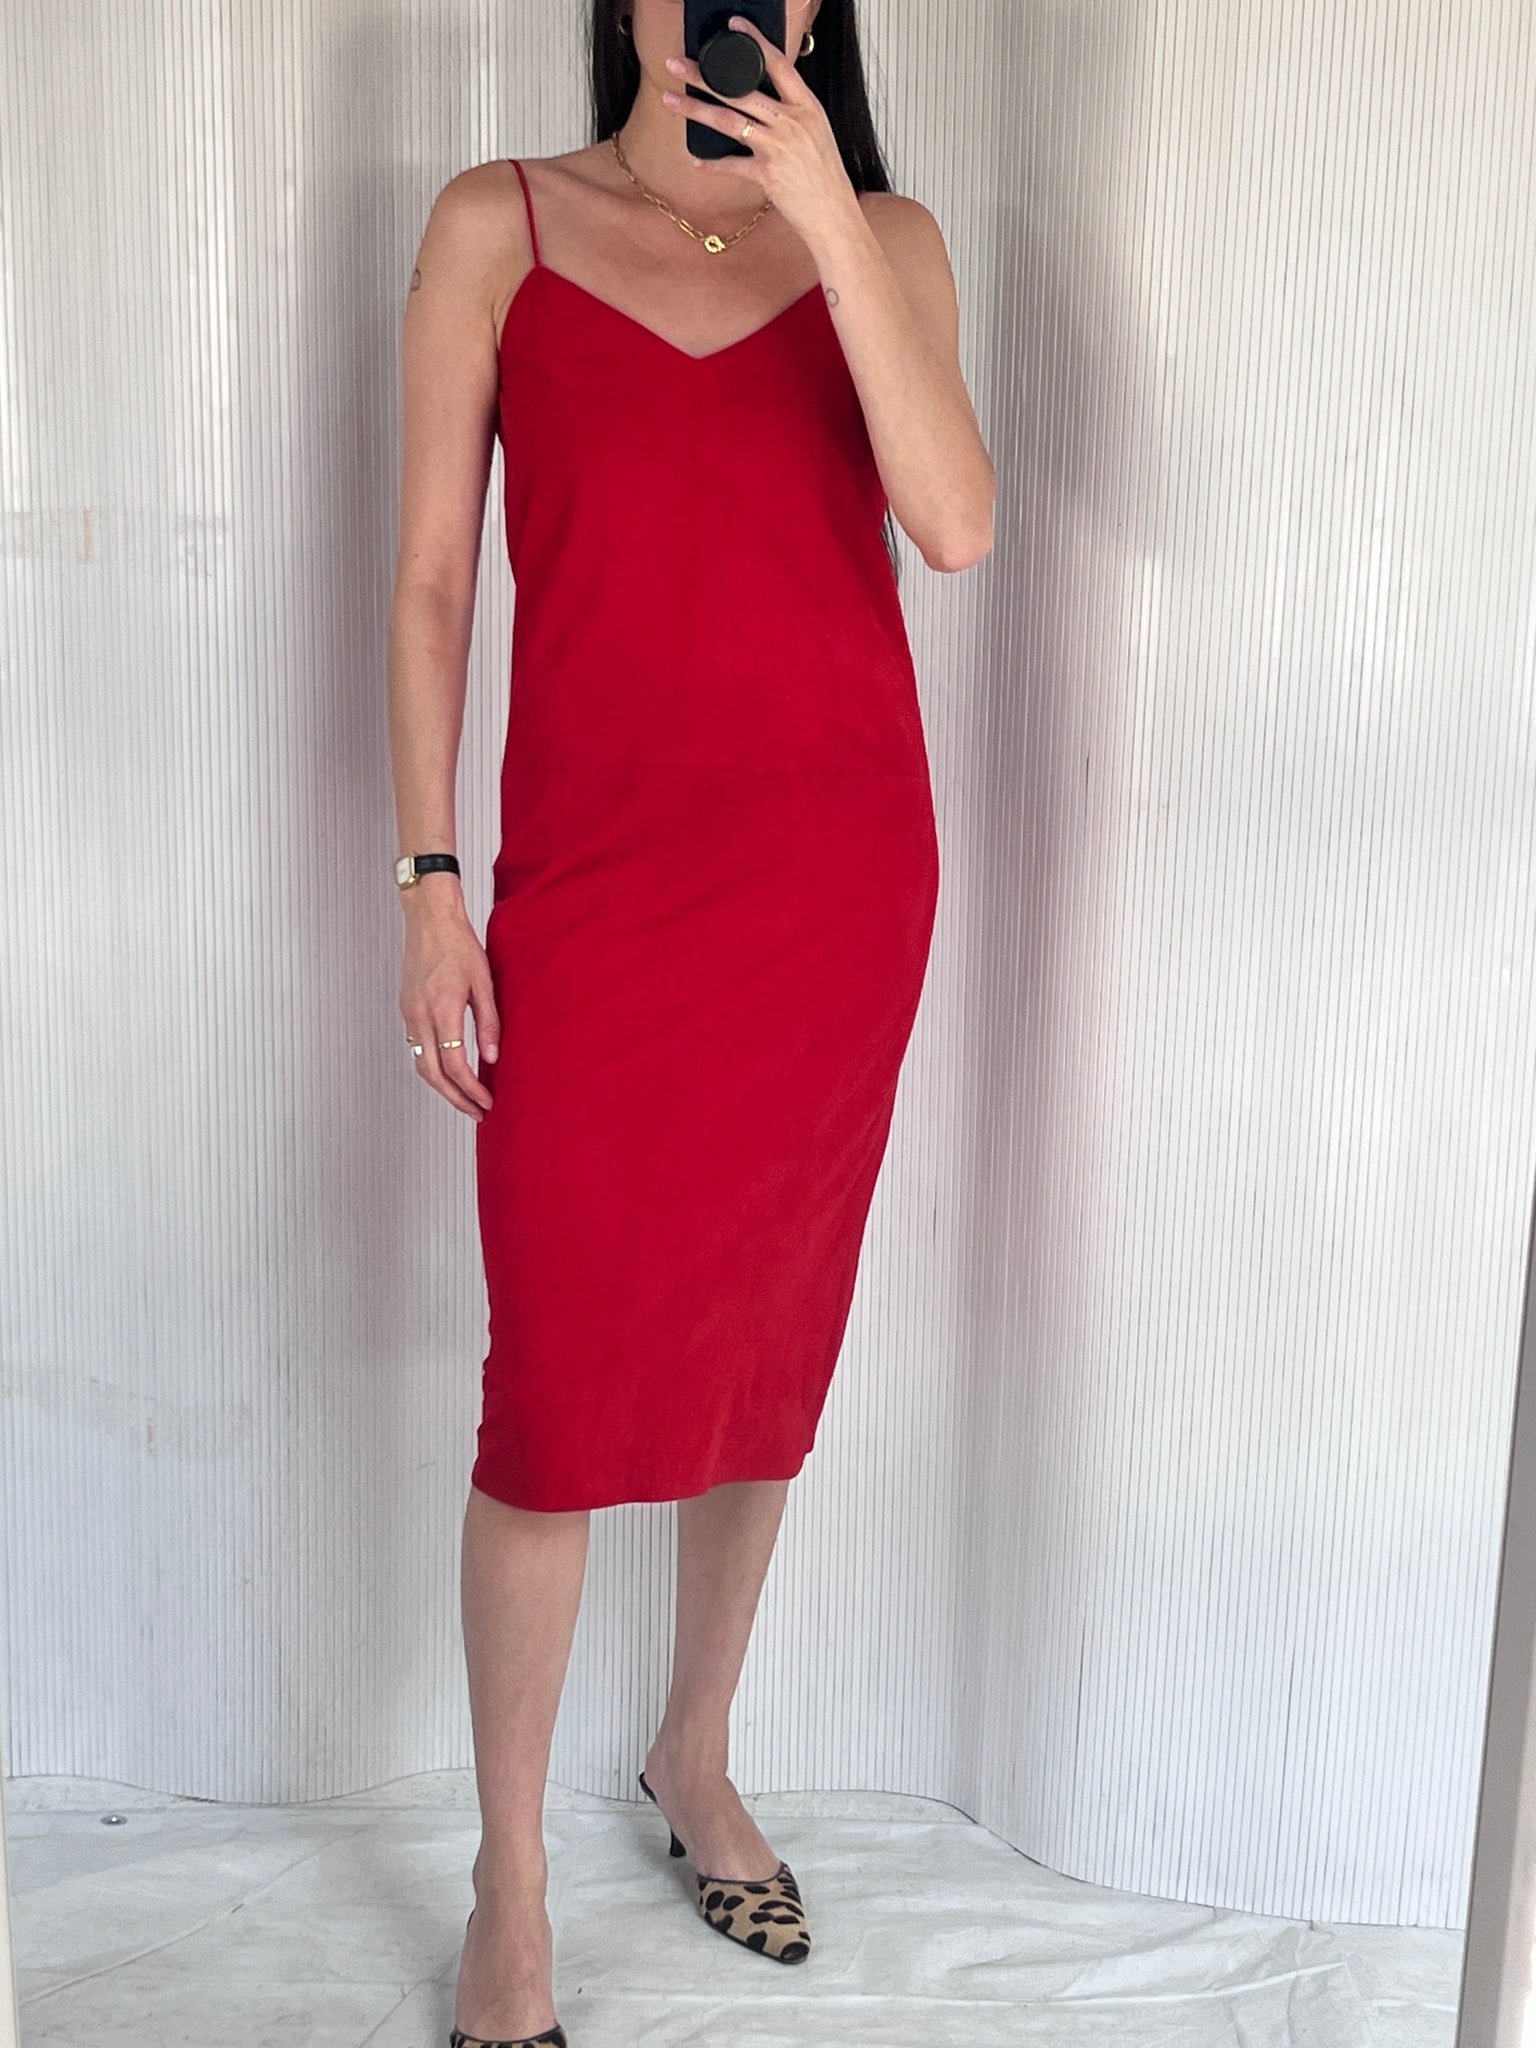 Vakko Red Suede Dress, S